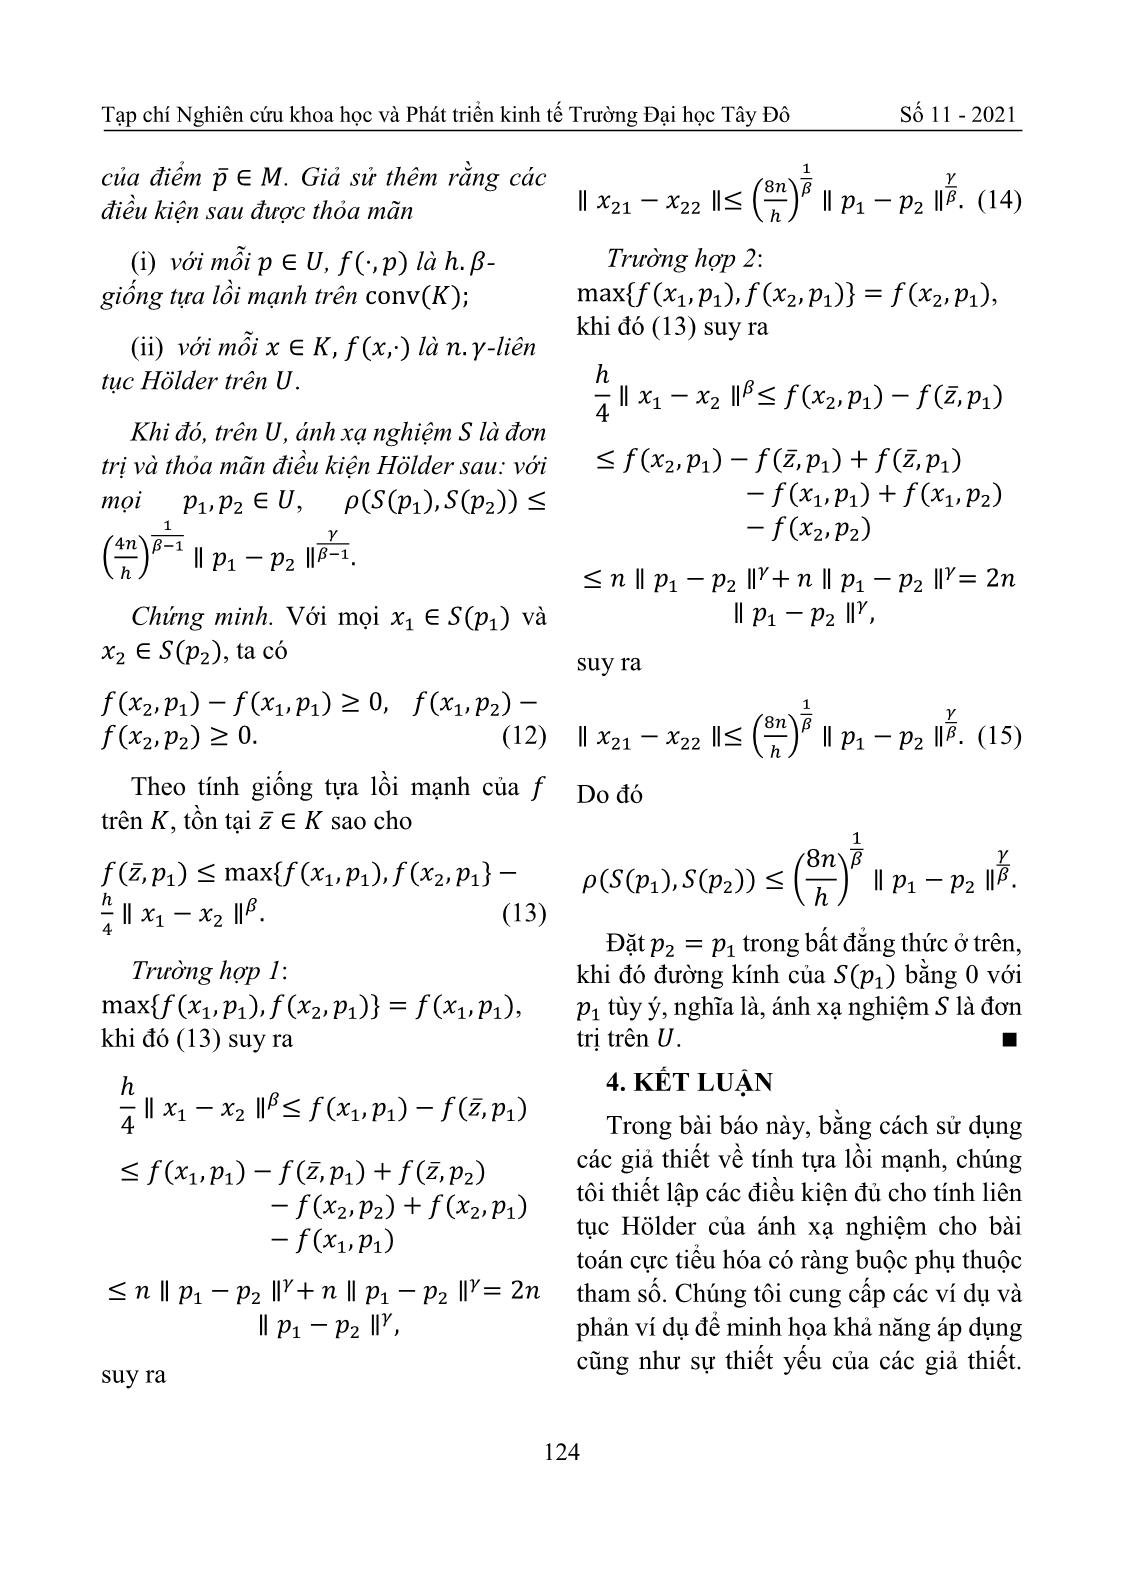 Tính liên tục Holder của ánh xạ nghiệm bài toán cực tiểu hóa có điều kiện trang 8